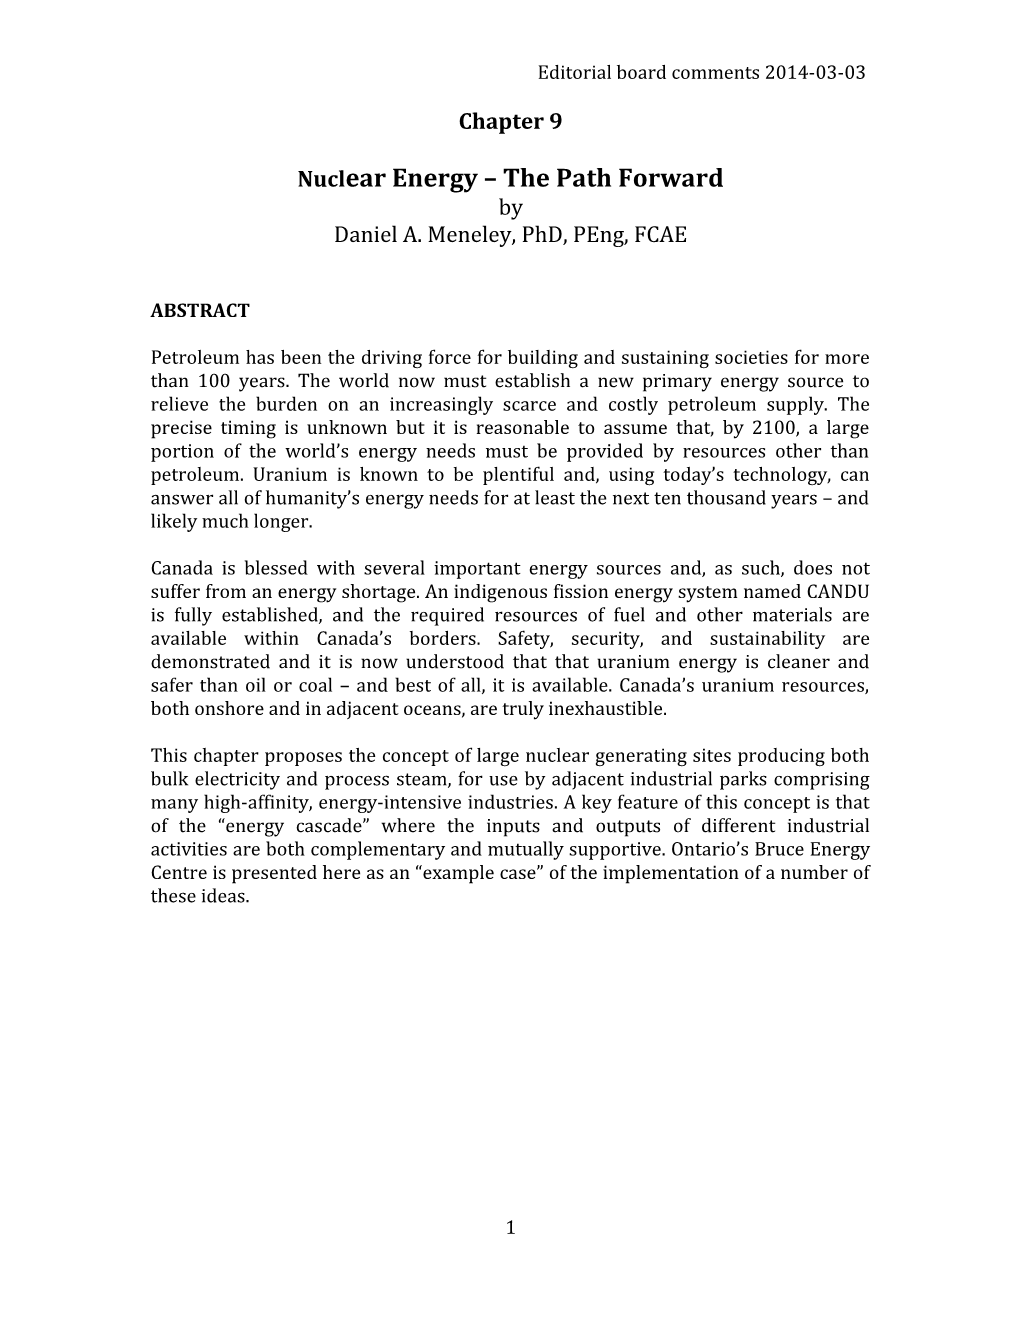 Nuclear Energy the Path Forward